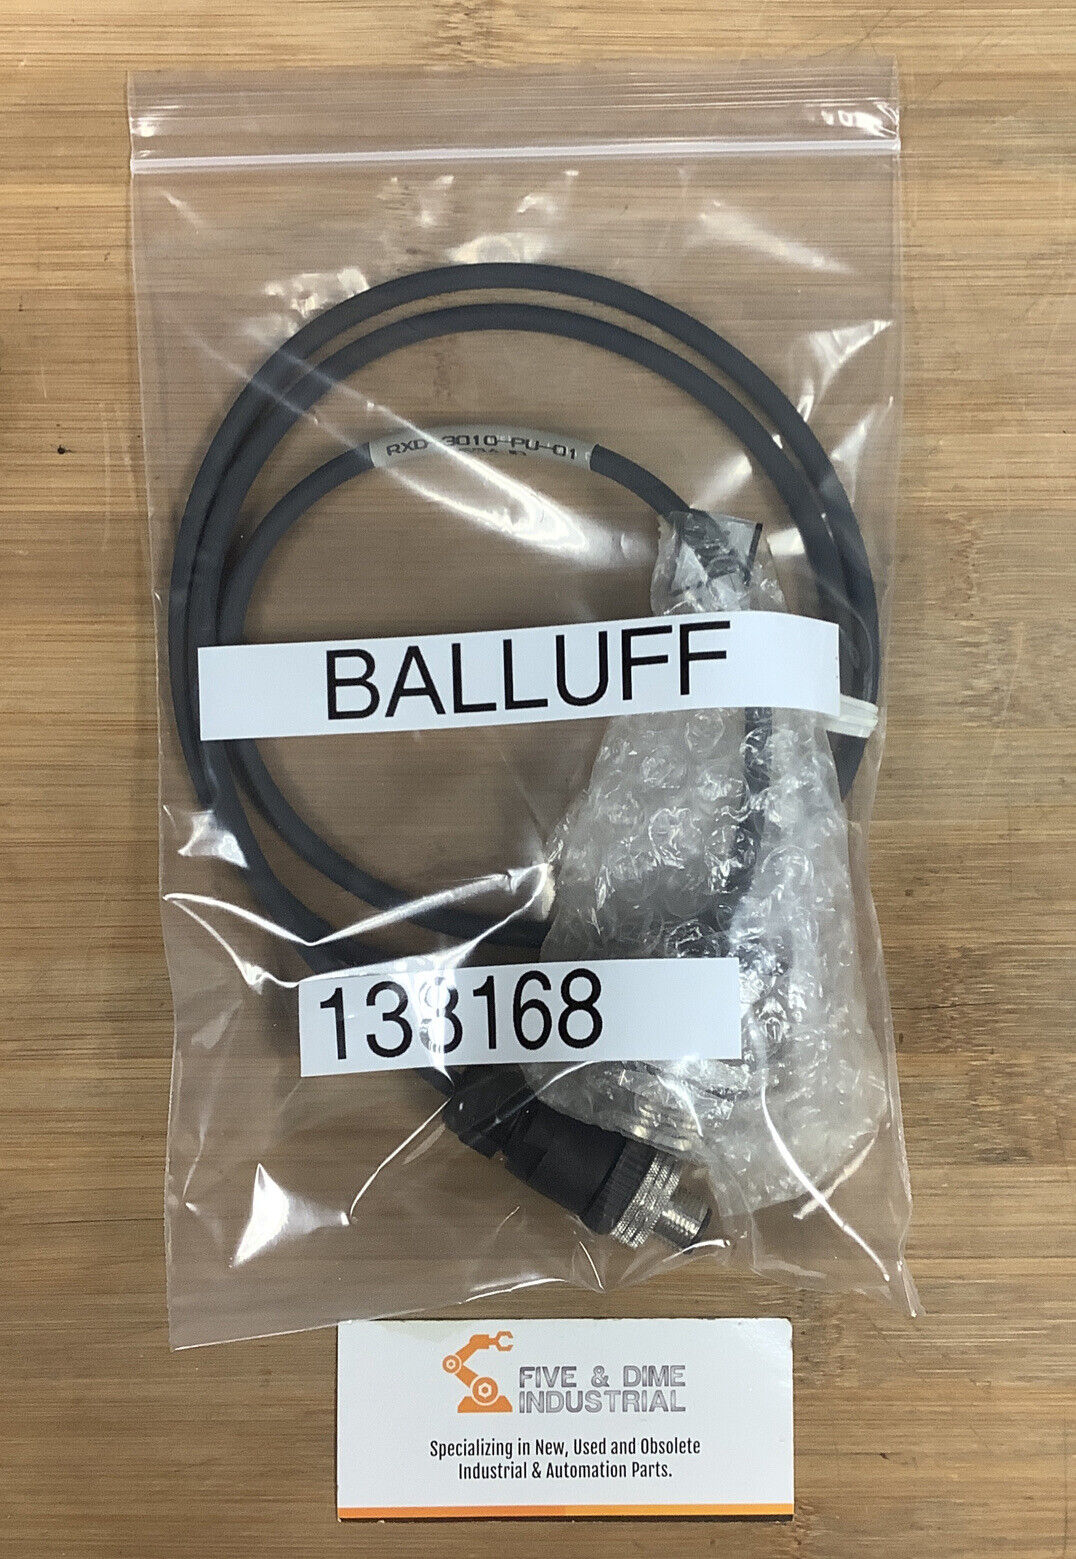 Balluff RXD-3010-PU-01 New  Proimity Sensor138168 (YE116)